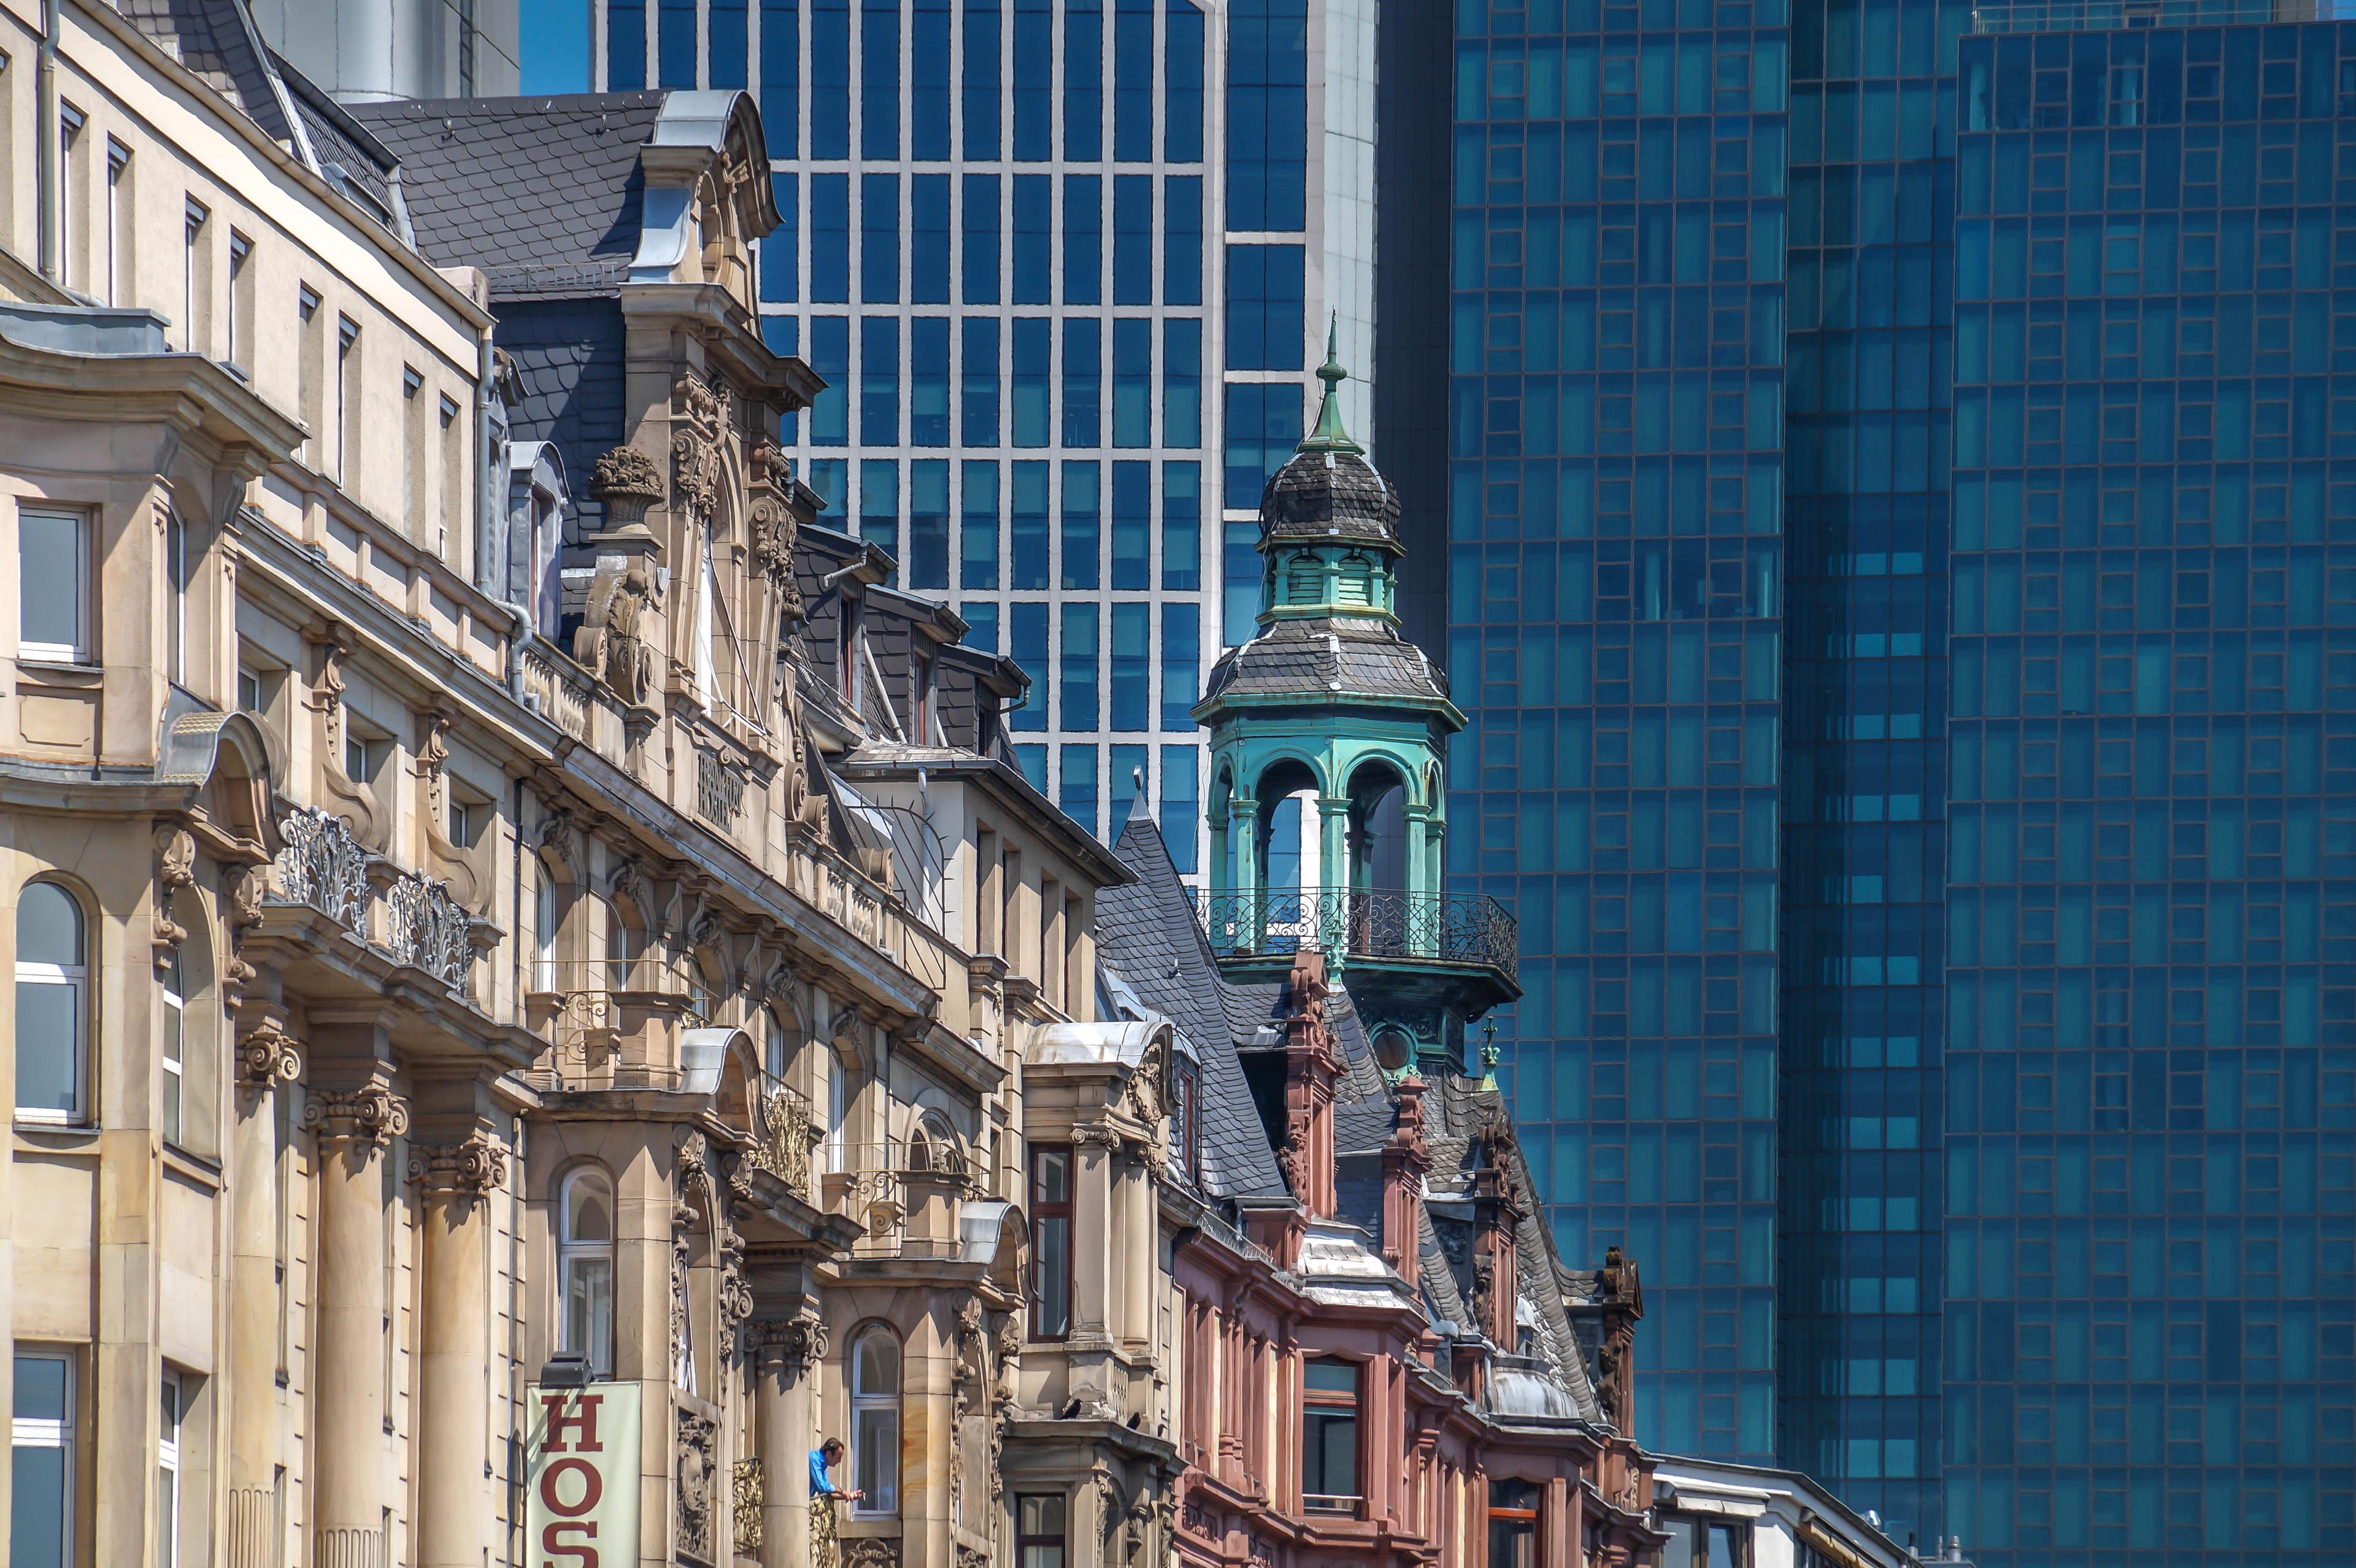 Der Kontrast zwischen Altbau und modernen Hochhäusern in Frankfurt am Main.